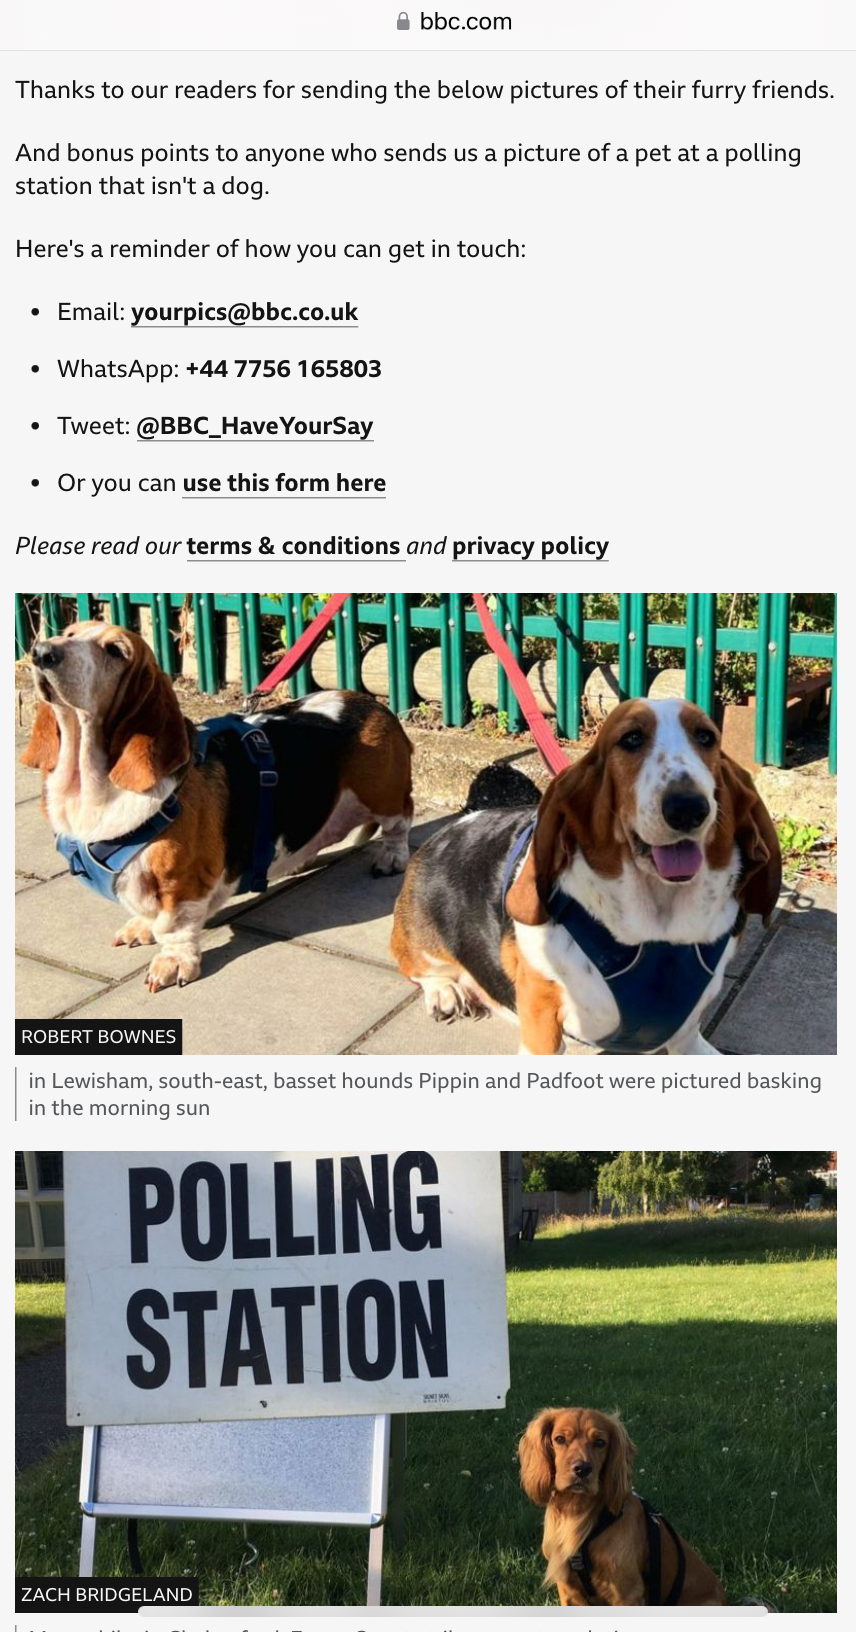 BBC即時報道提及票站外的狗狗。